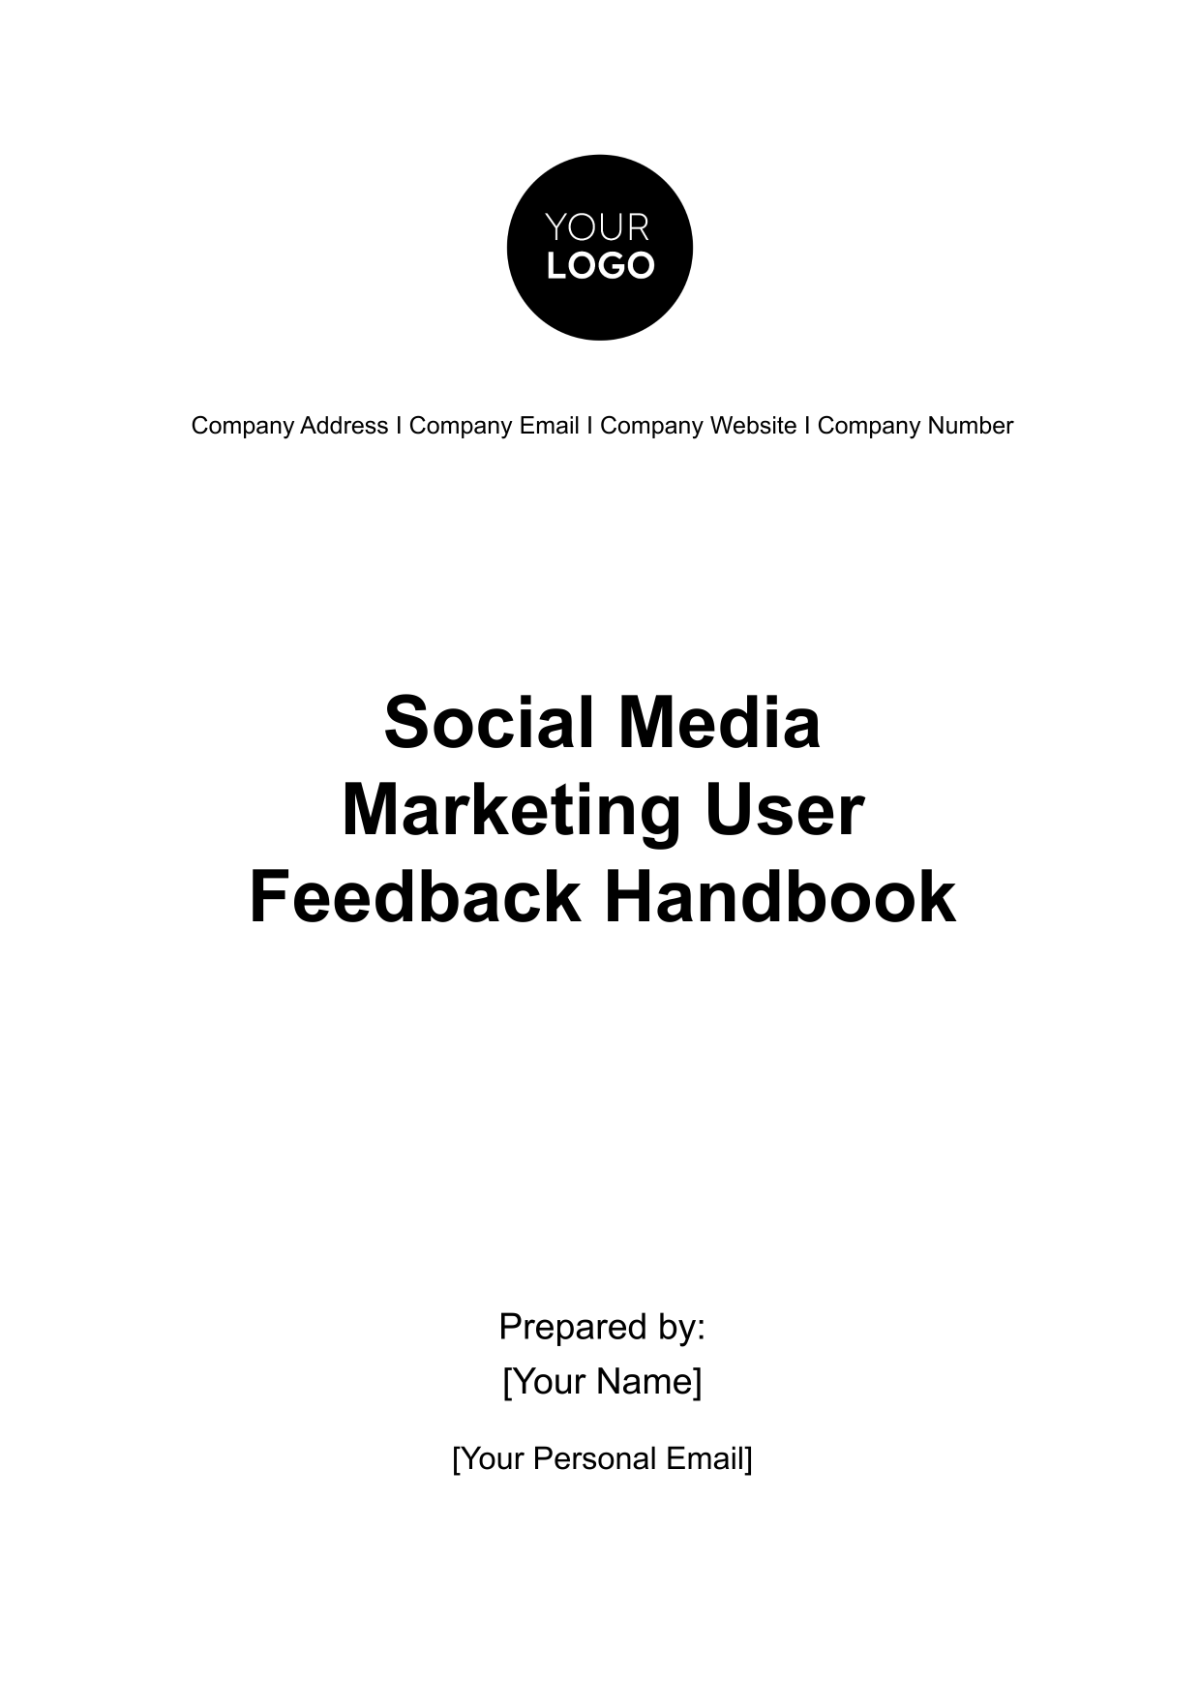 Free Social Media Marketing User Feedback Handbook Template